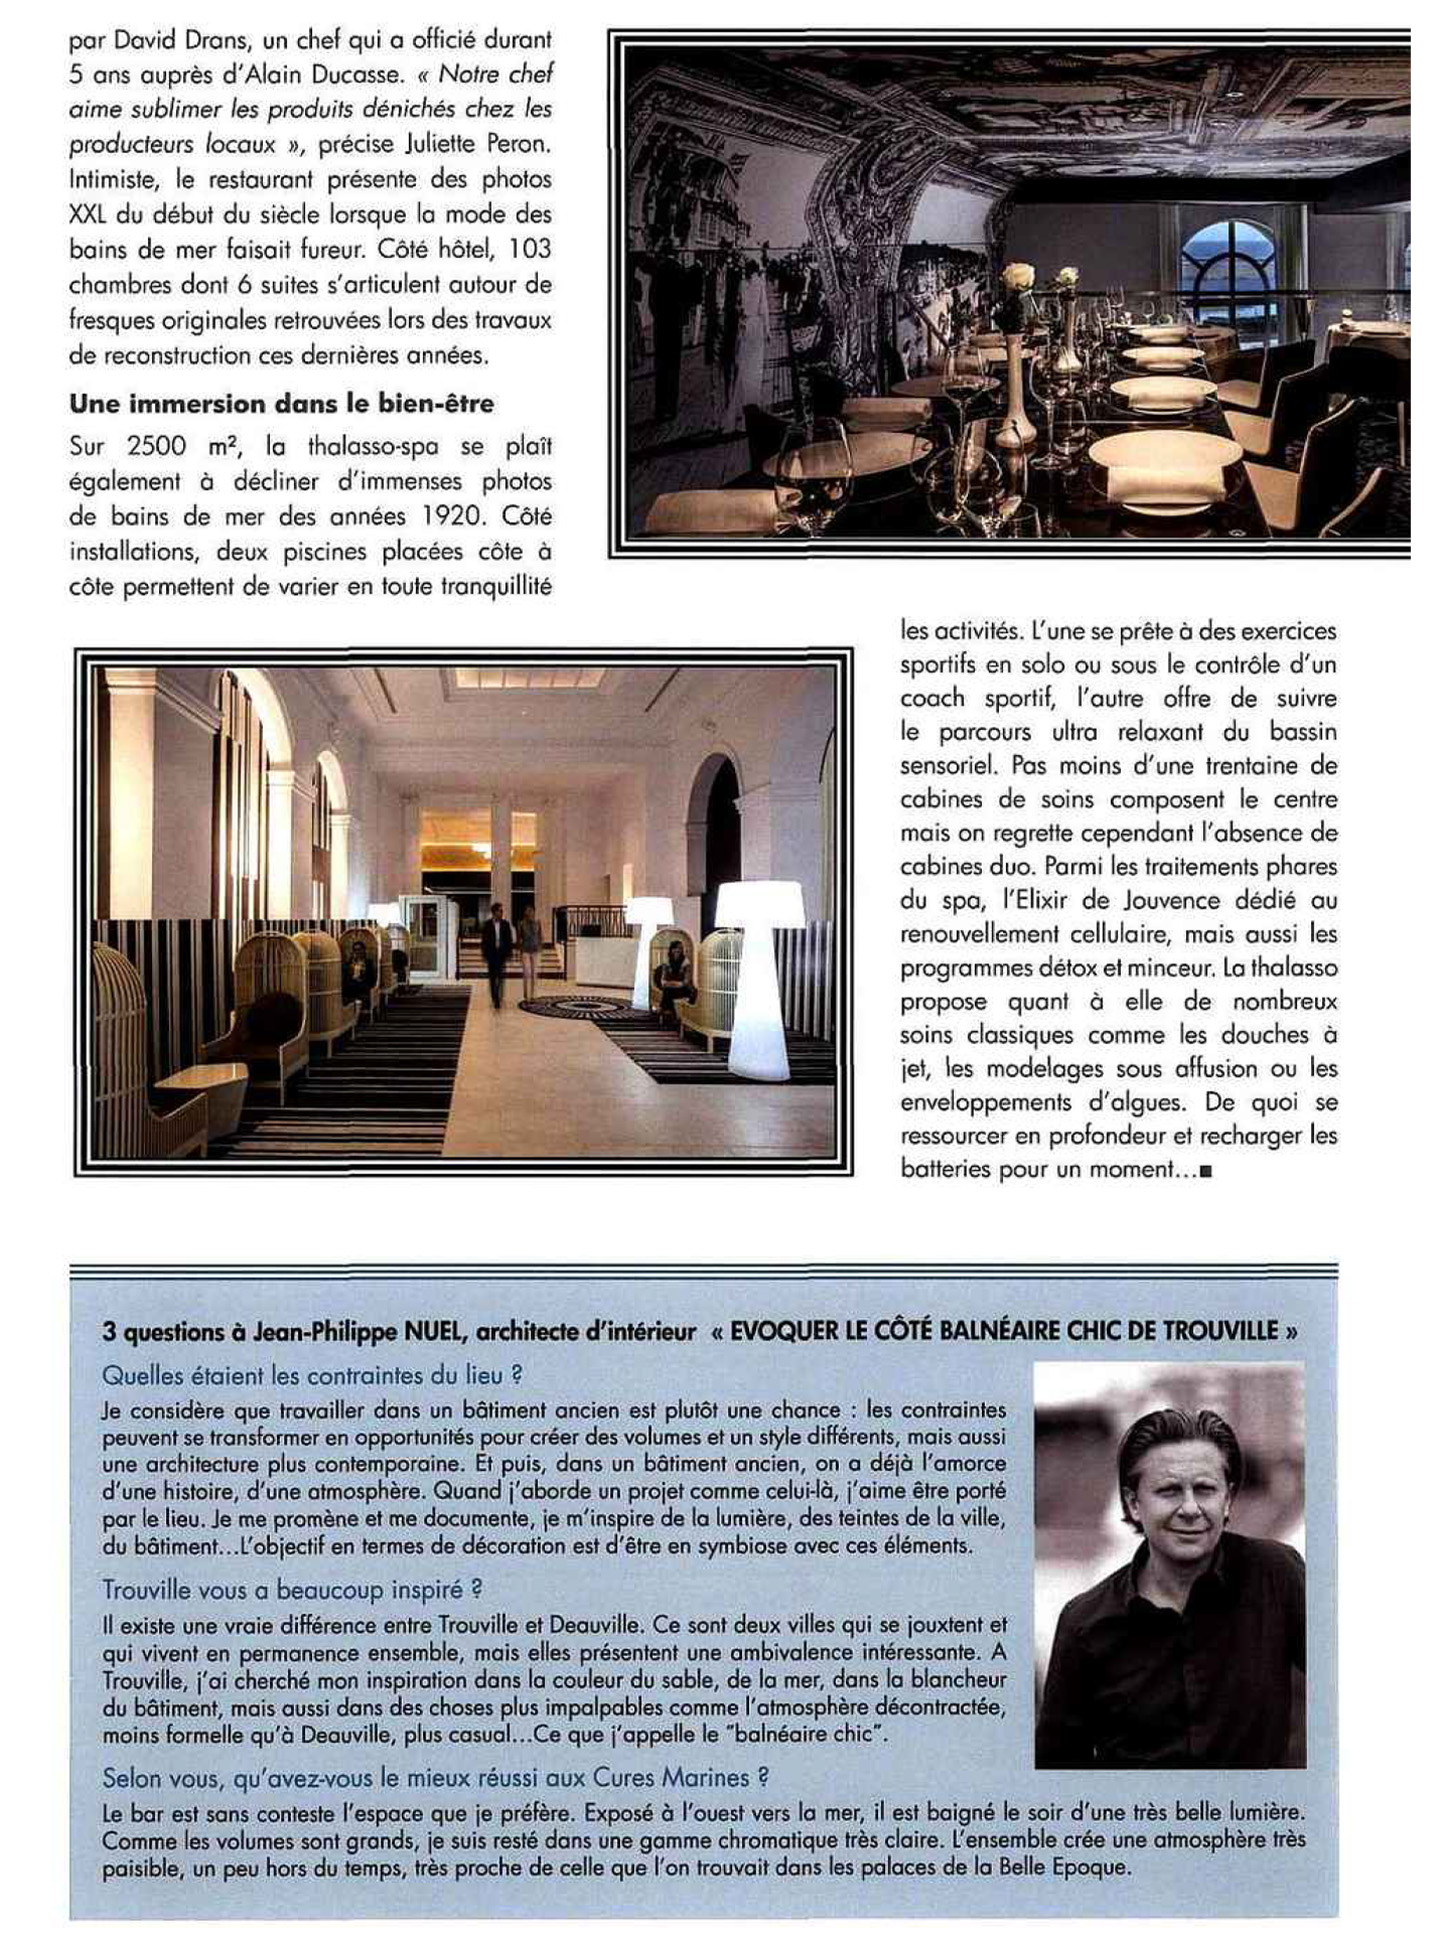 article sur les cures marines de trouville réalisées par le studio d'architecture d'intérieur jean-philippe nuel dans le magazine univers luxe, hotel et spa 5 étoiles